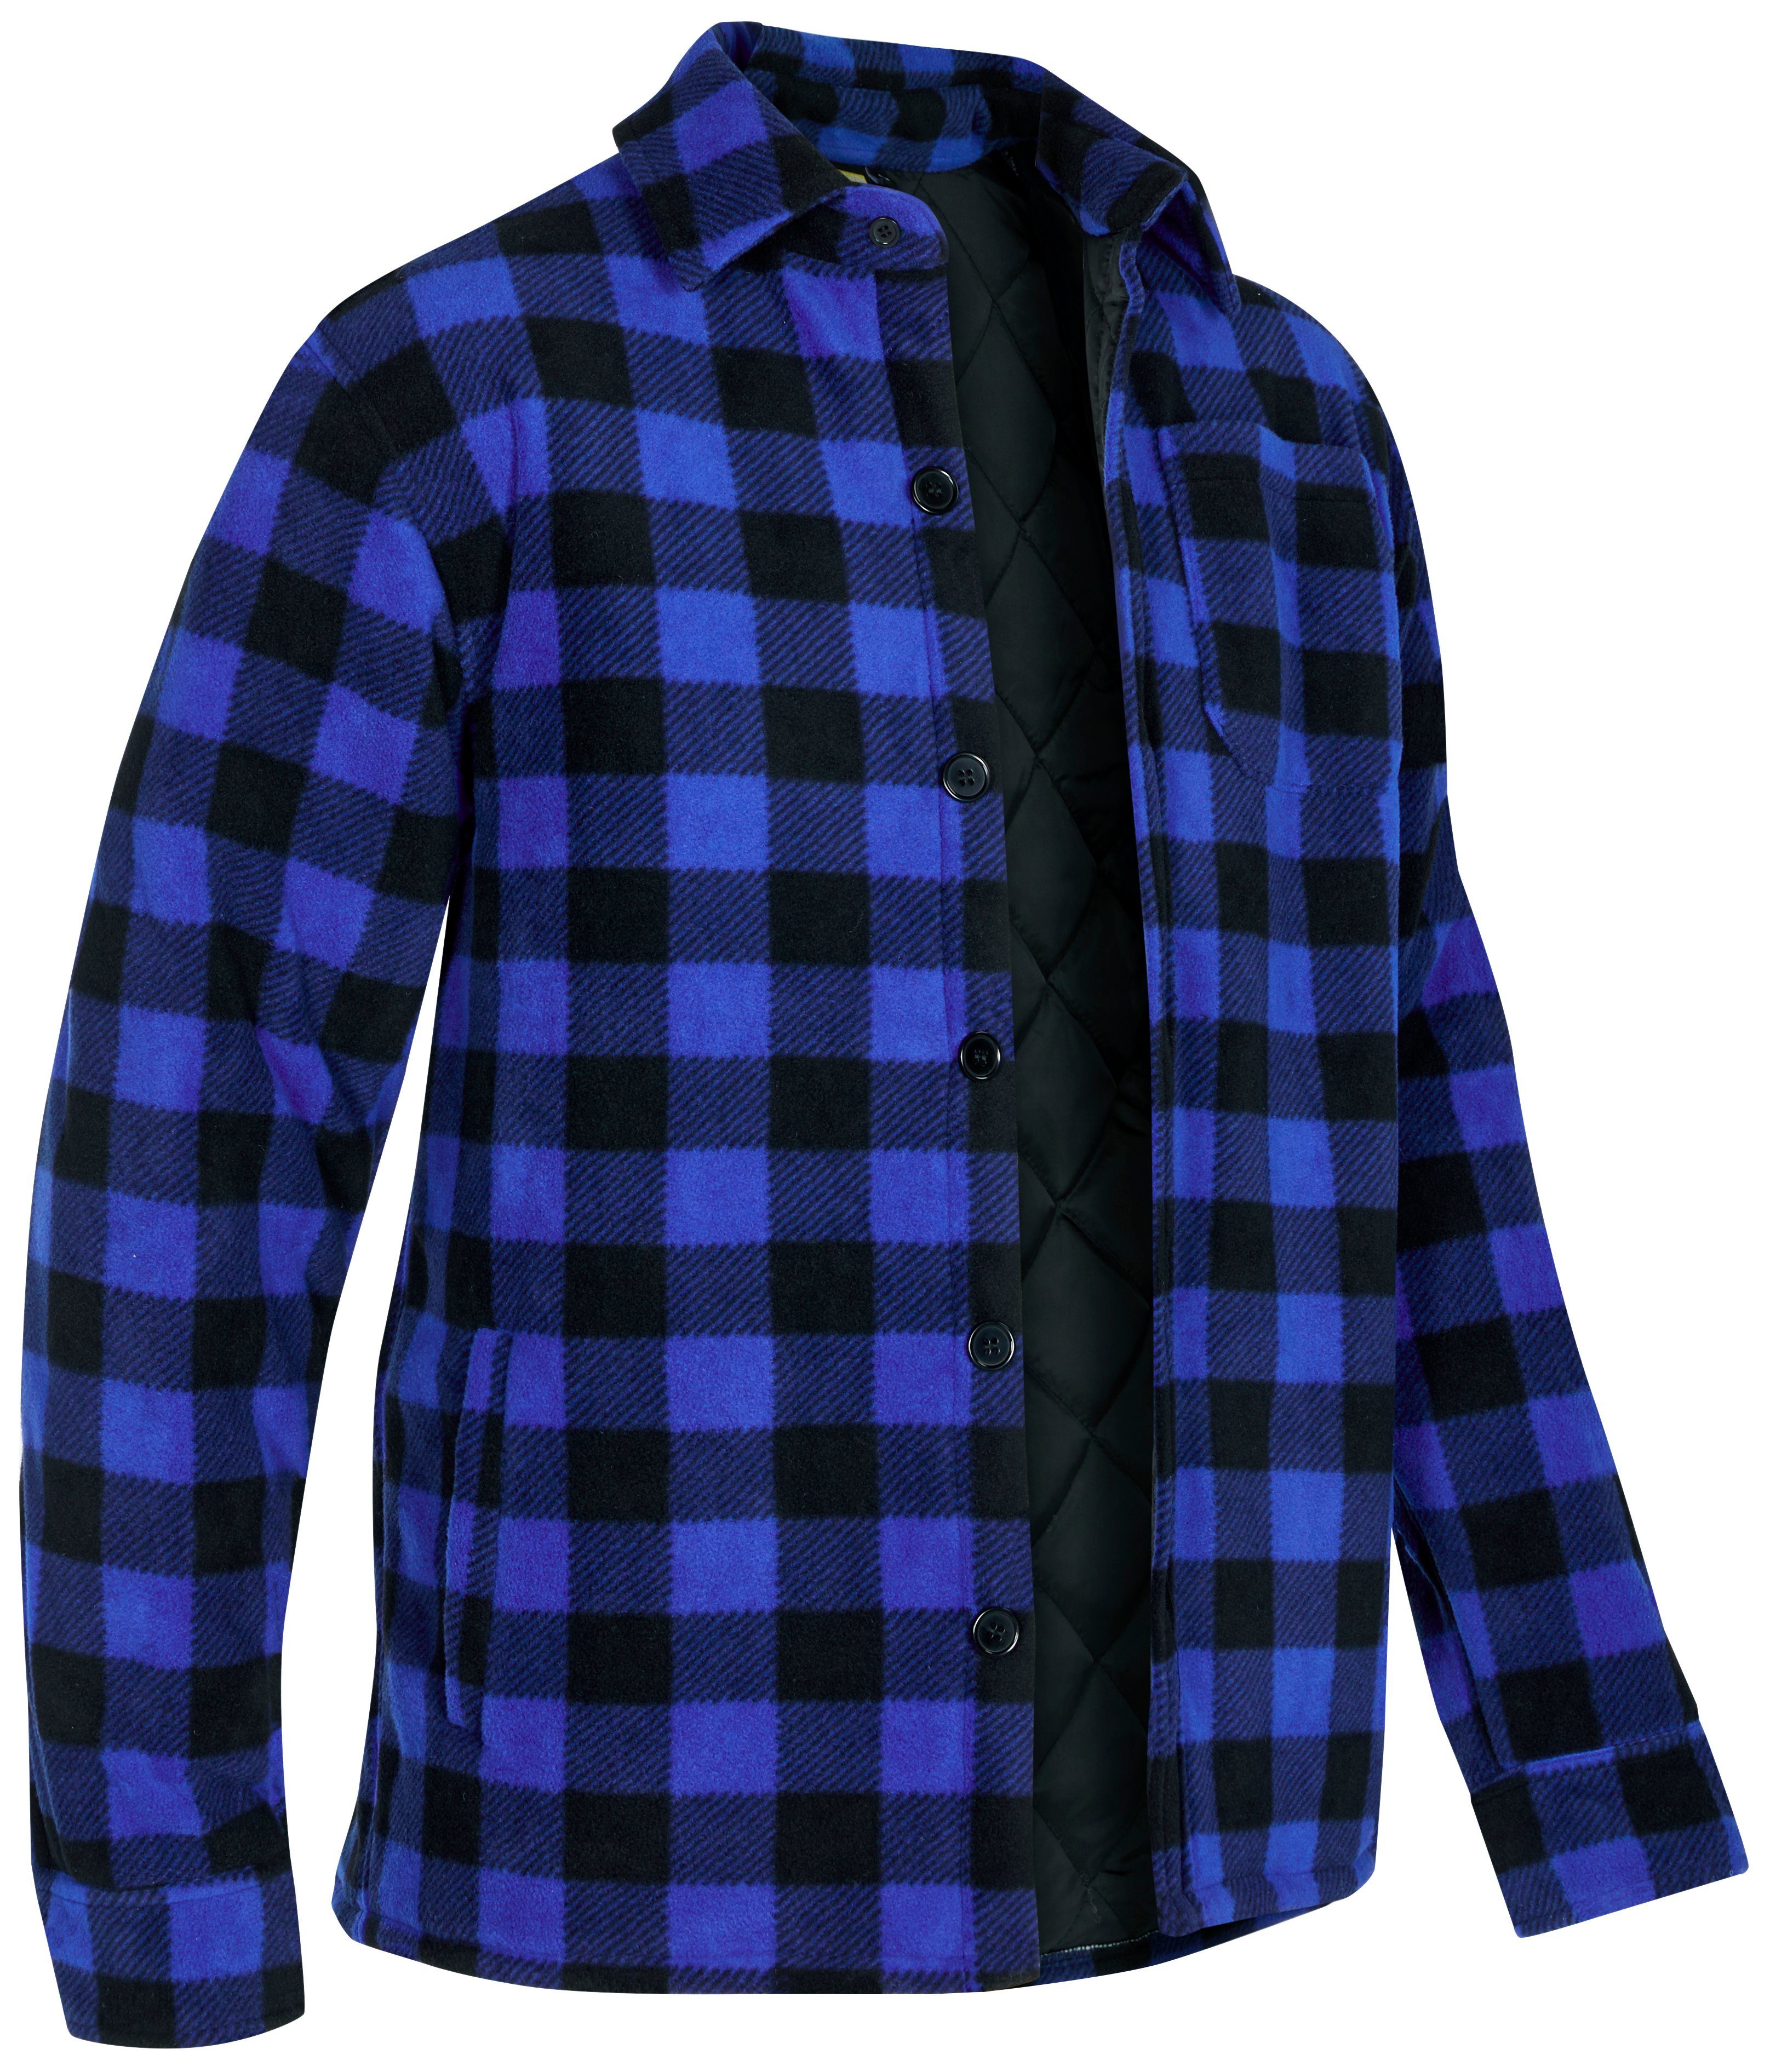 zu Taschen, gefüttert, Flanellhemd 5 mit oder offen mit blau-schwarz warm zugeknöpft Rücken, Northern tragen) Flanellstoff Country Hemd (als verlängertem Jacke